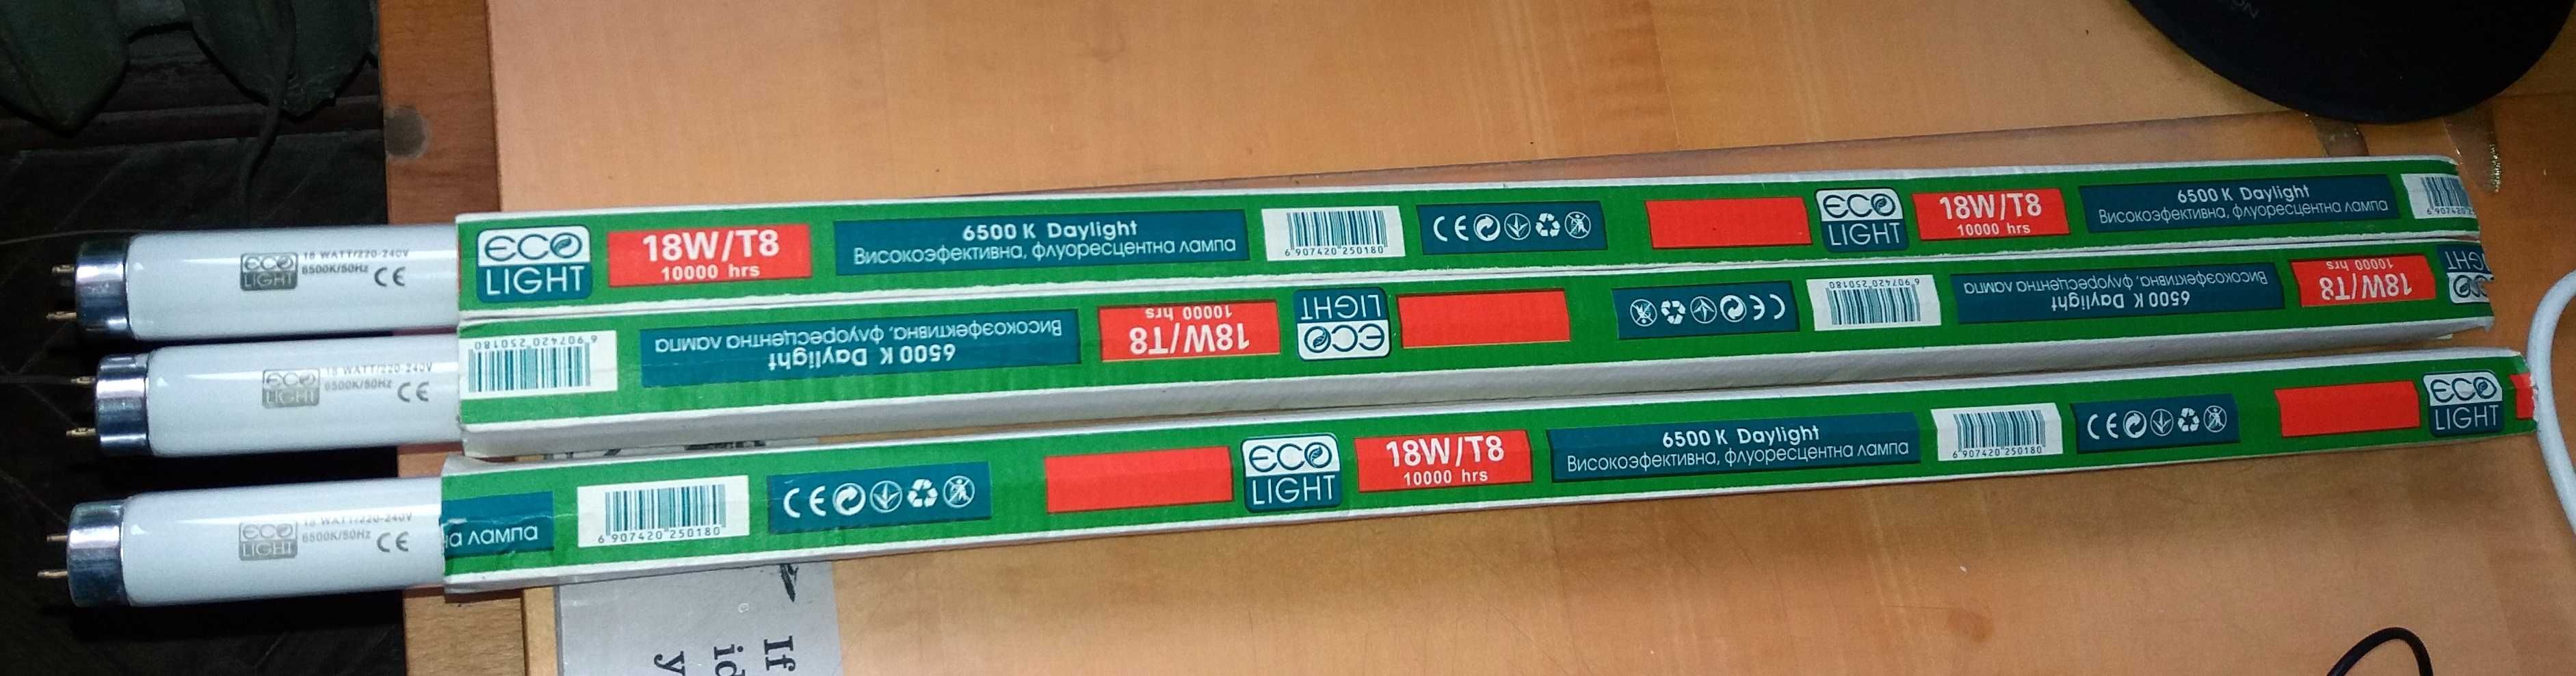 Люминесцентные лампочки ЄСО Light 18w/T8, 10000 hrs, 6500 K Daylight